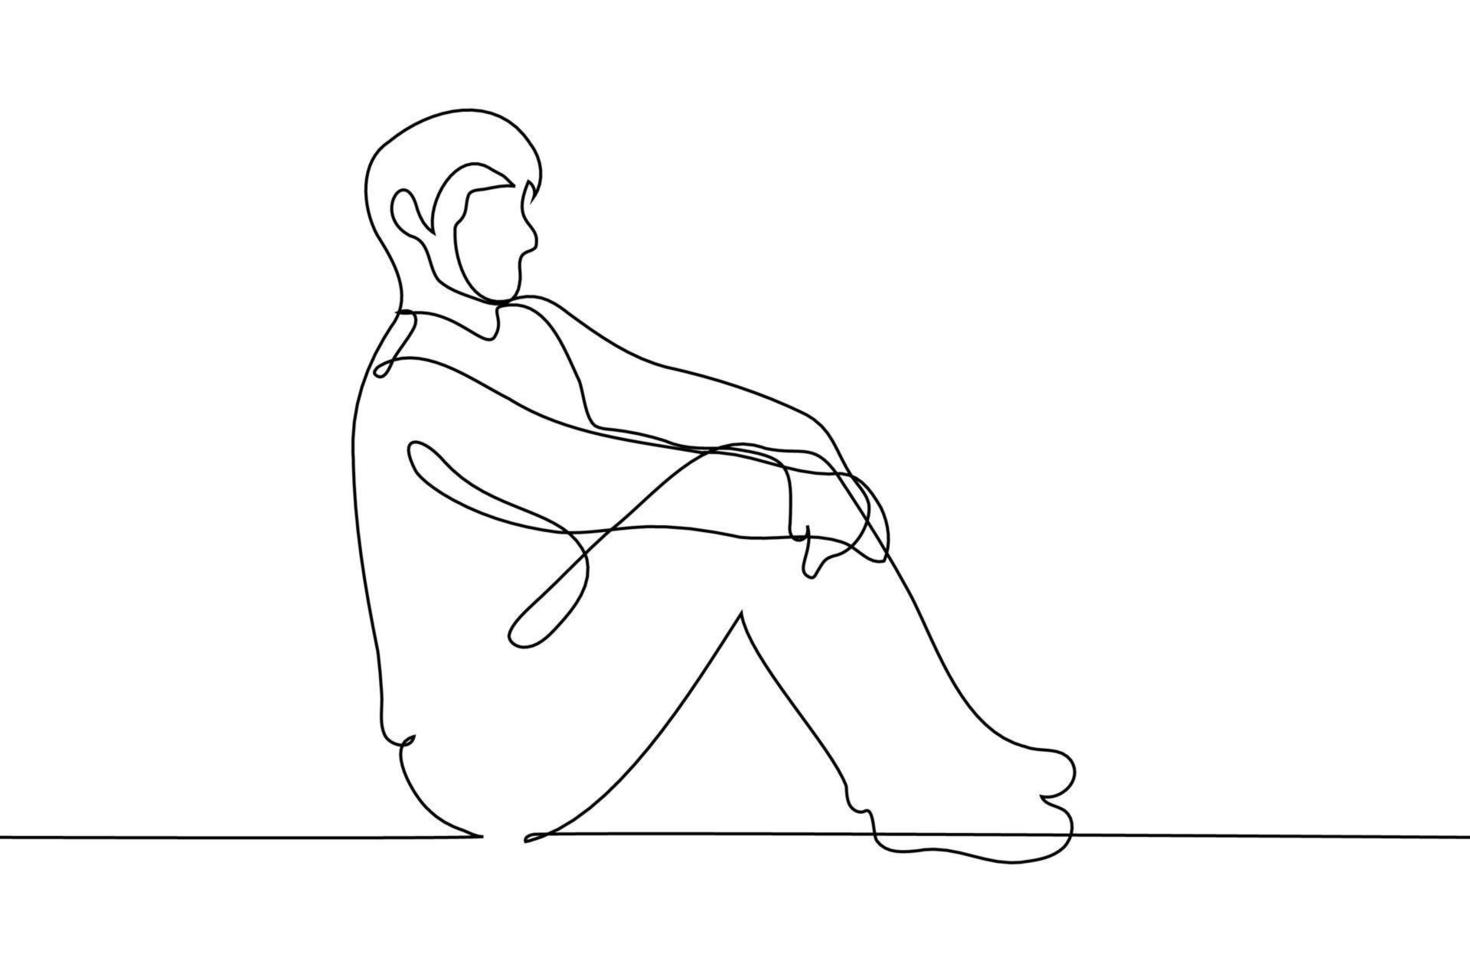 homme est assis plein longueur sur le sol avec jambes ensemble et retour tout droit - un ligne dessin vecteur. concept correct posture, tout droit retour vecteur